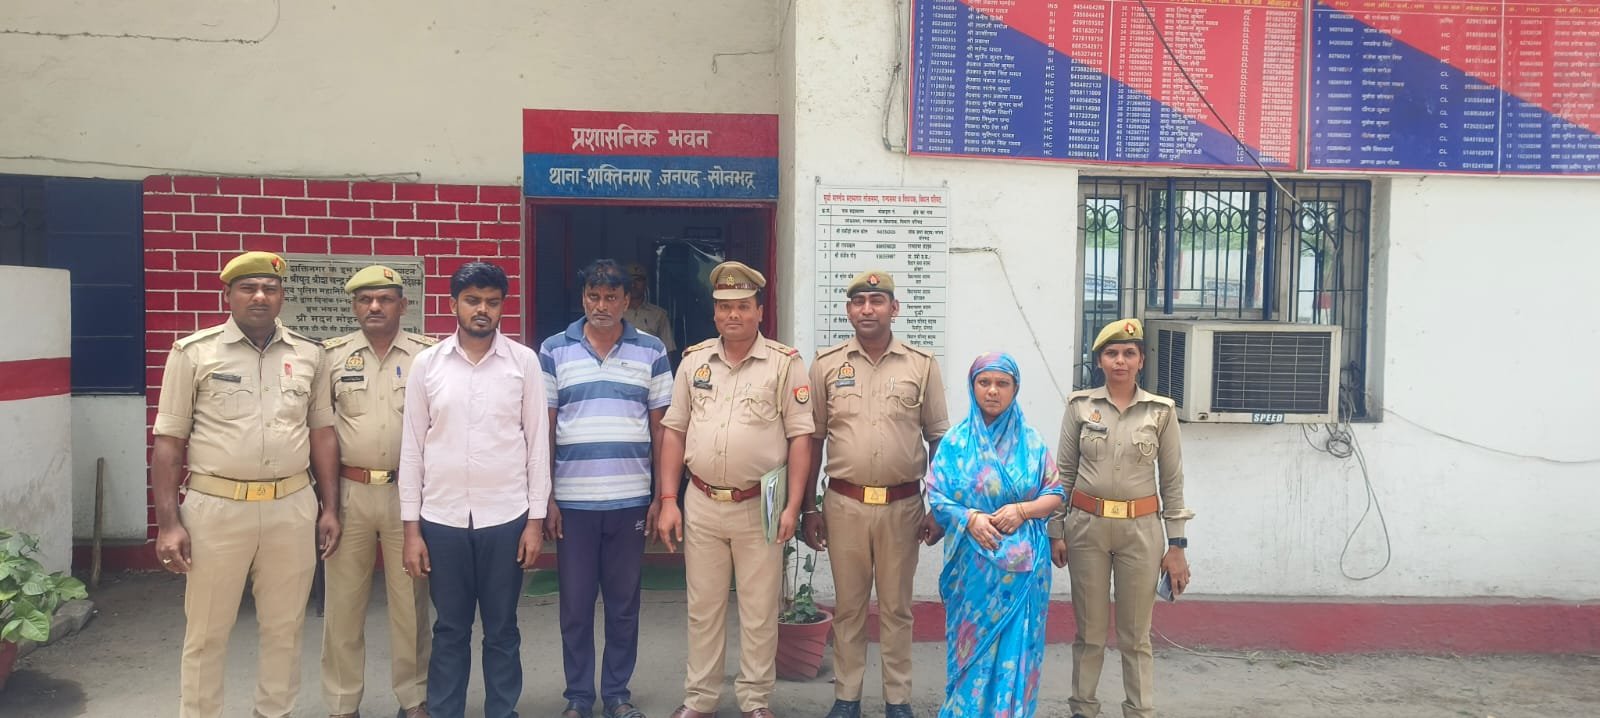 शक्तिनगर पुलिस ने डीपी एक्ट में एक महिला सहित तीन आरोपियों को किया गिरफ्तार